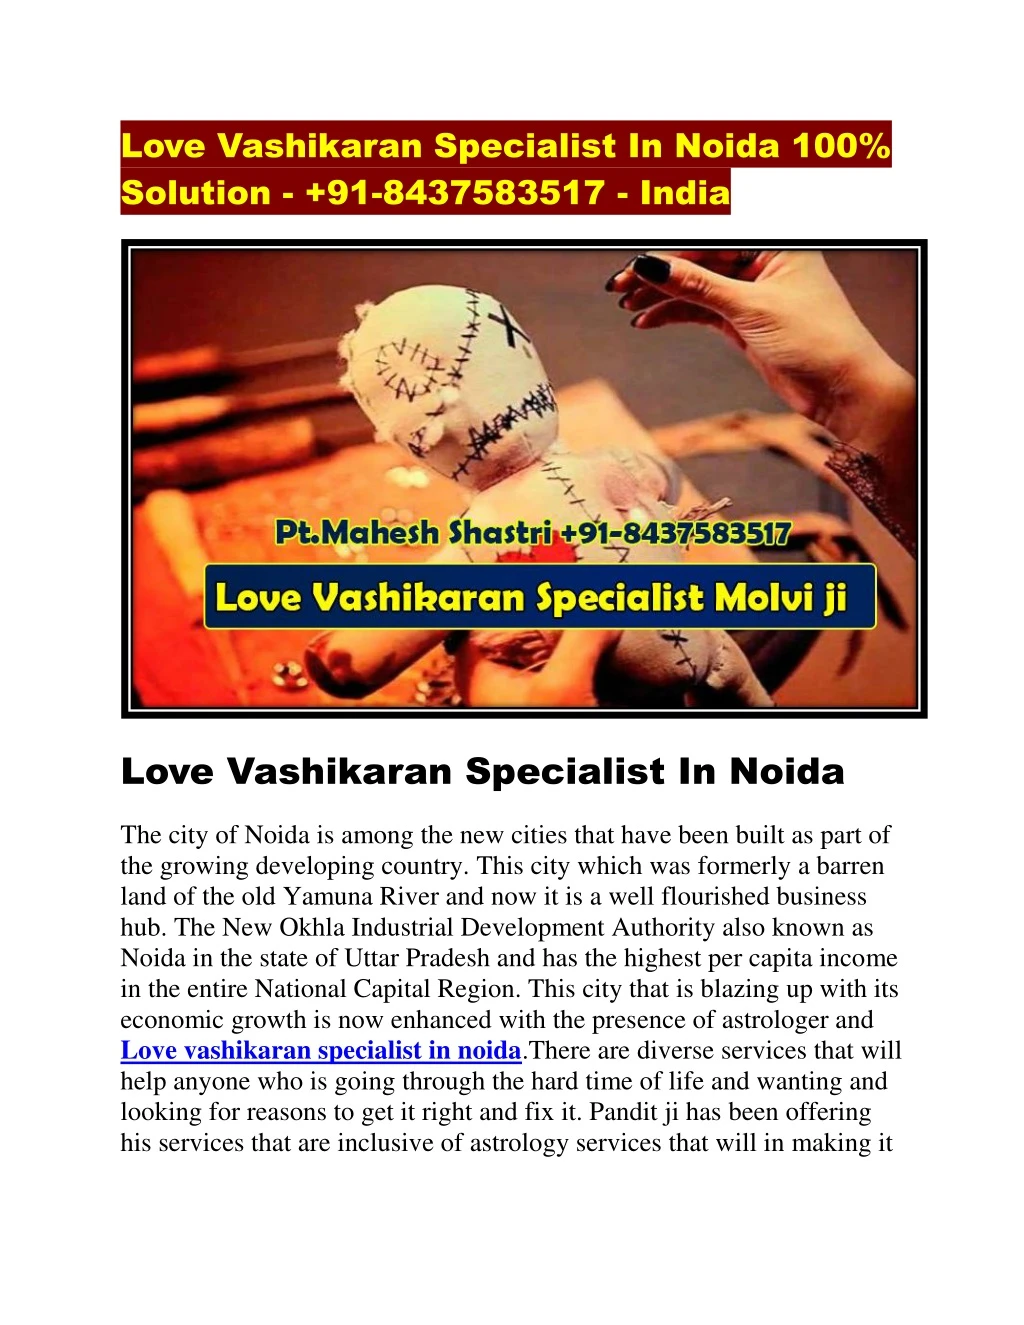 love vashikaran specialist in noida 100 solution